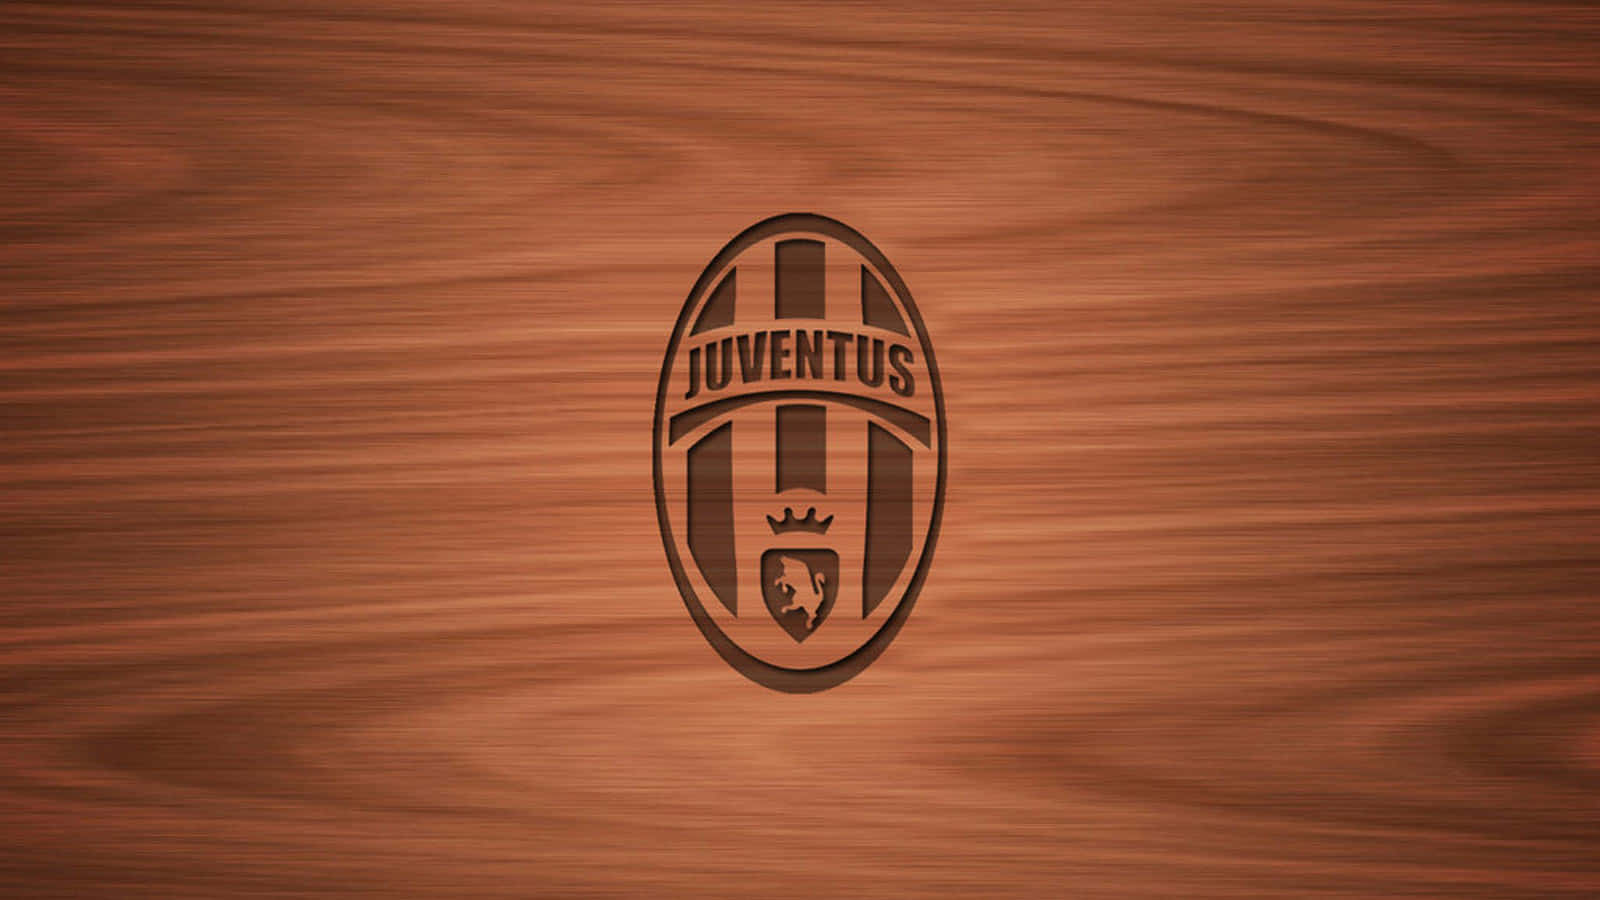 Juventusfootball Club Dominerer Den Italienske Liga.